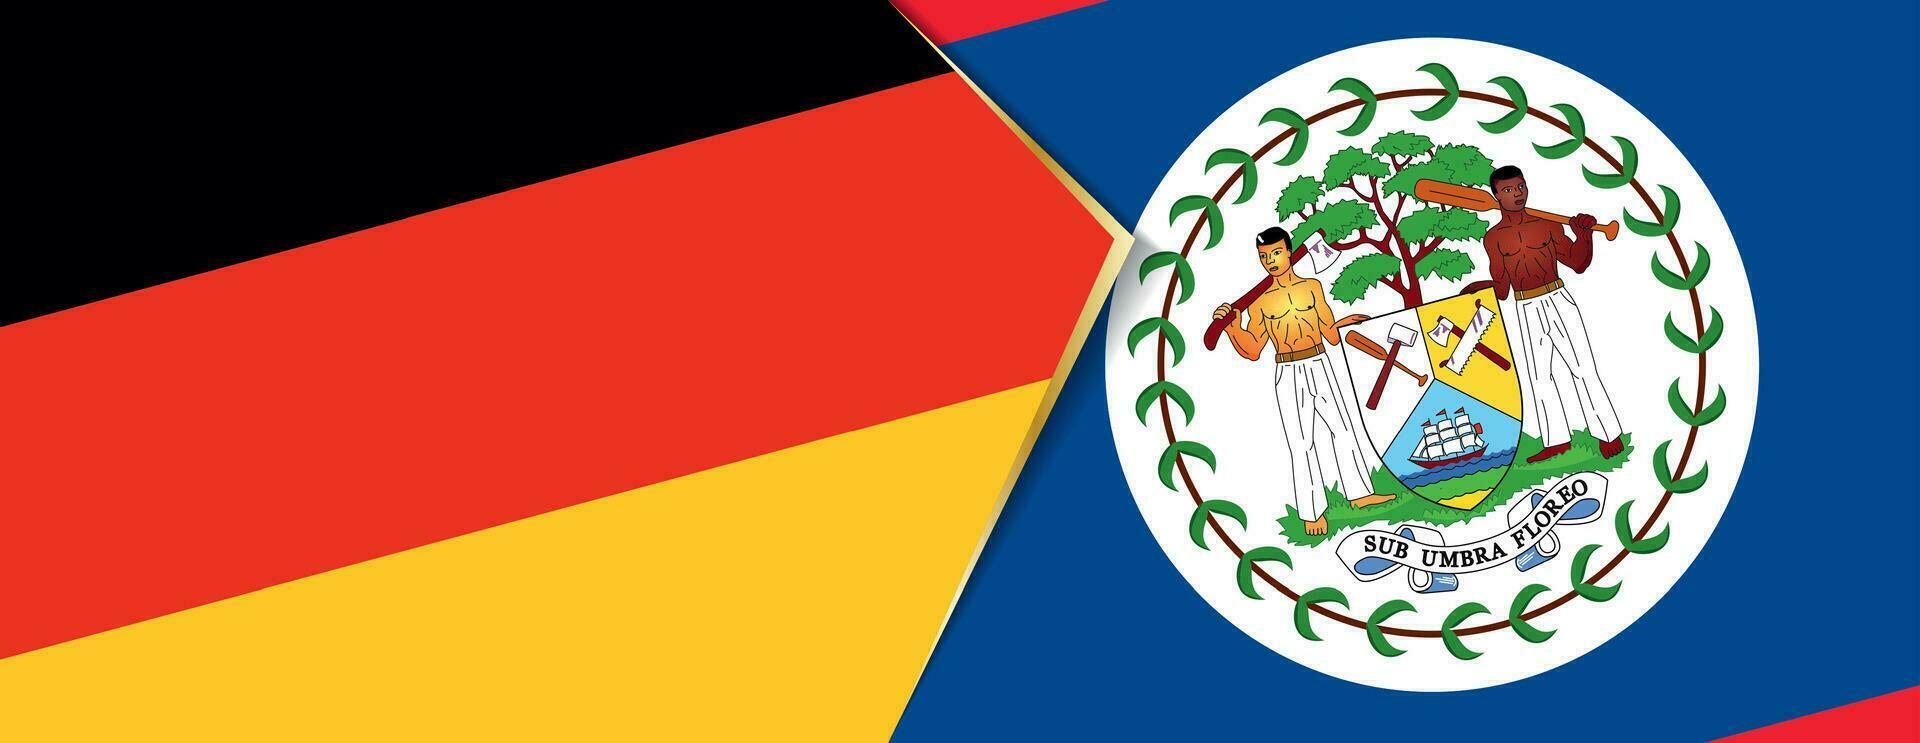 Alemania y belice banderas, dos vector banderas